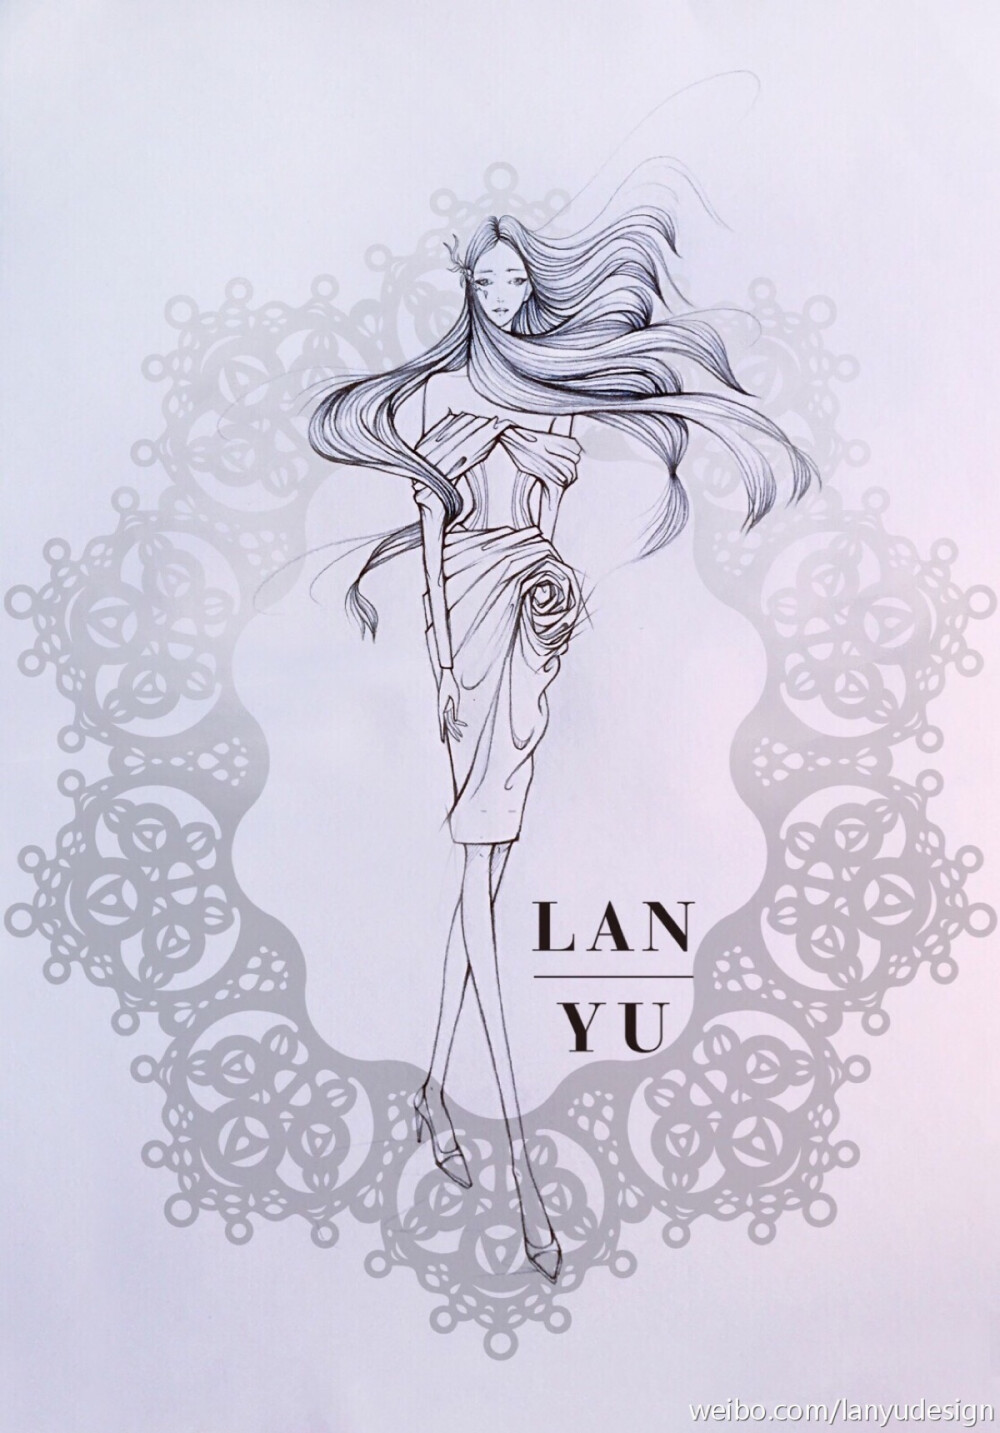 【简单黑白】LAN YU Haute Couture 2015春夏高定设计效果图 等风来 铅笔画 手绘 兰玉 素材